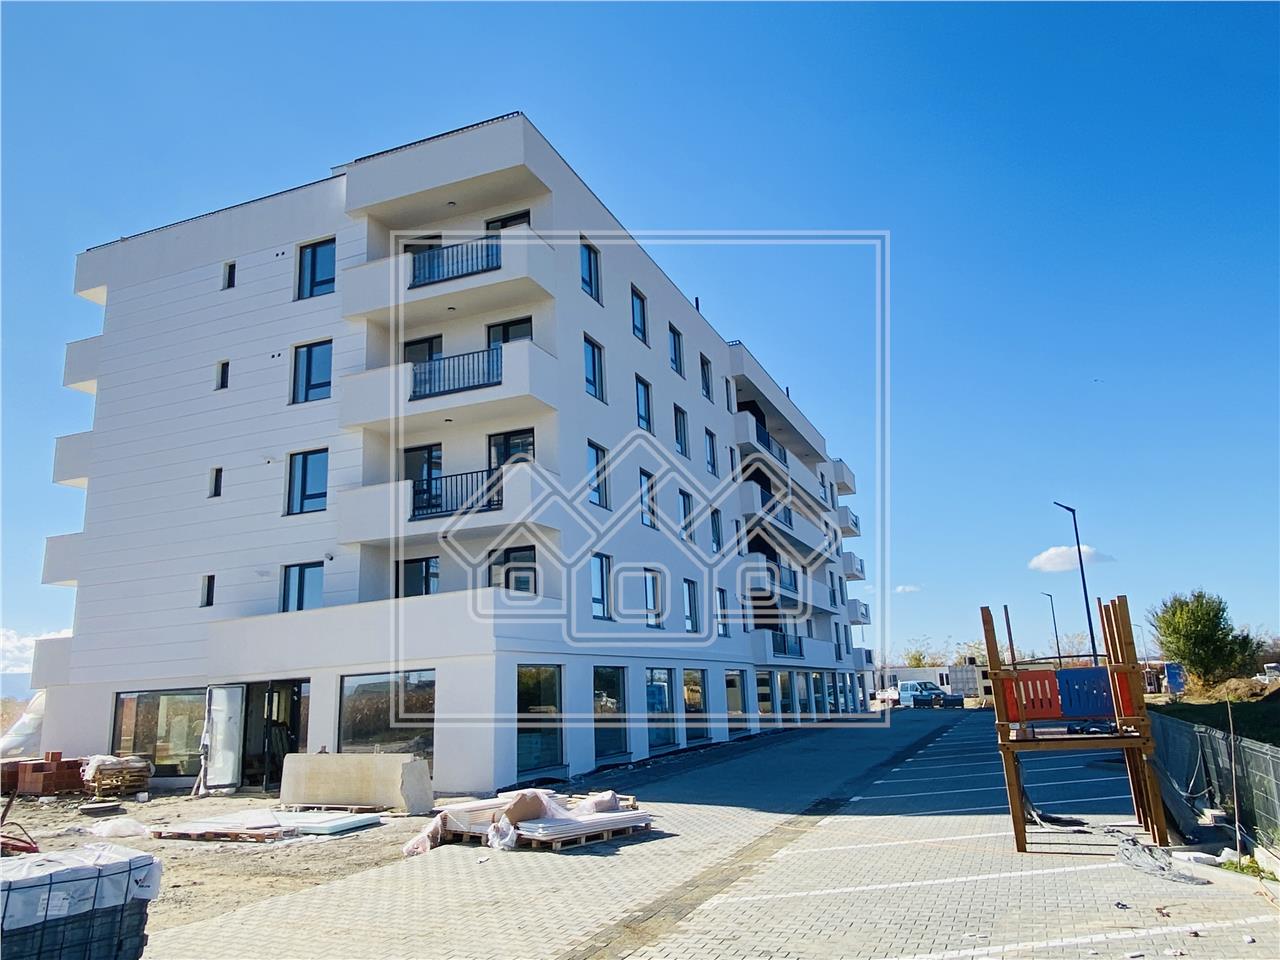 Apartament de vanzare in Sibiu - 4 camere, 2 bai si balcon 10 mp